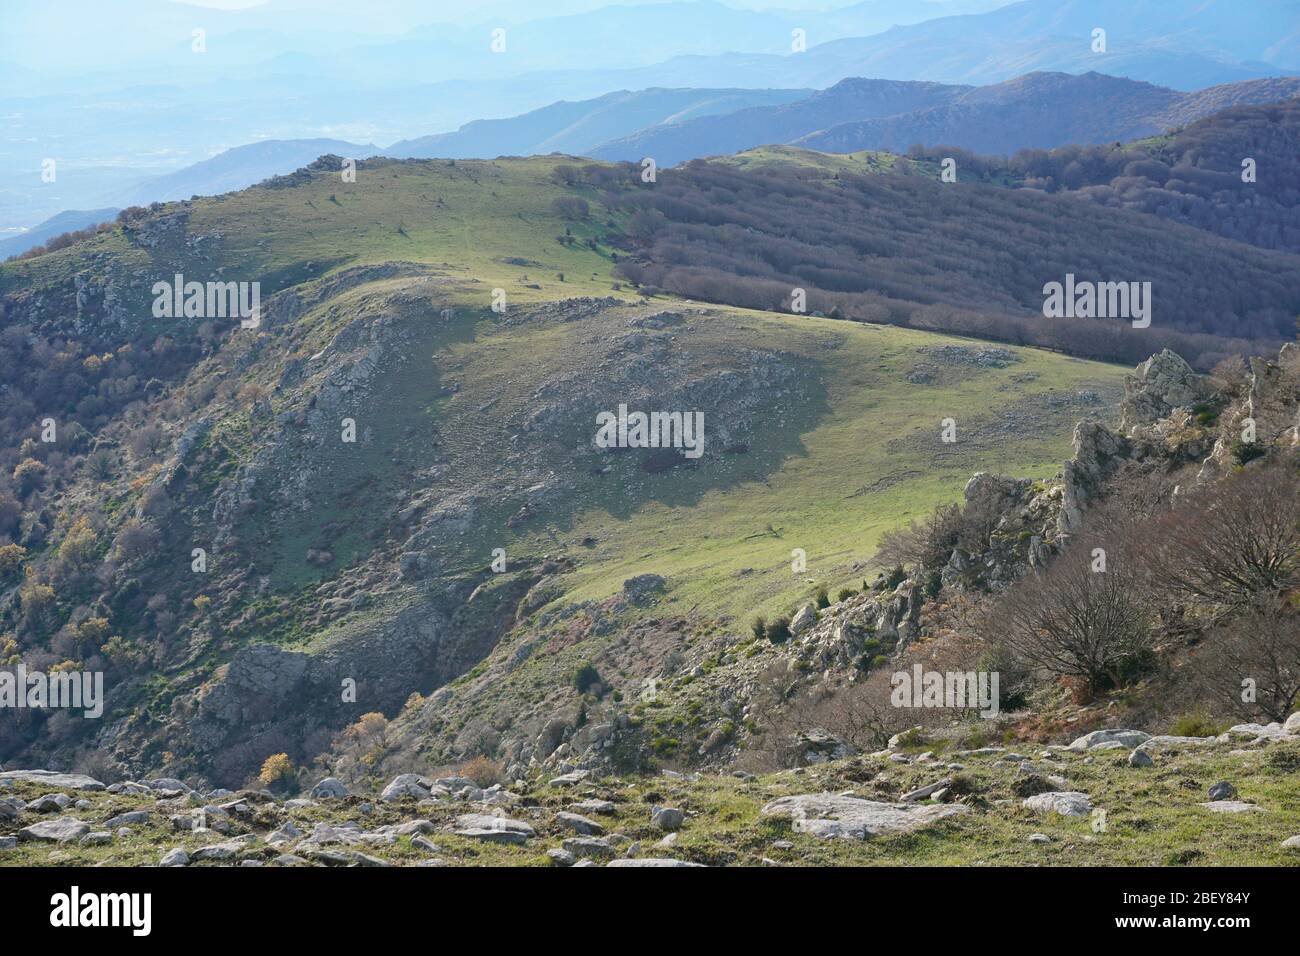 Pyrénées montagnes paysage dans le massif de l'Albera entre la France et l'Espagne, Pyrénées-Orientales, Catalogne Banque D'Images